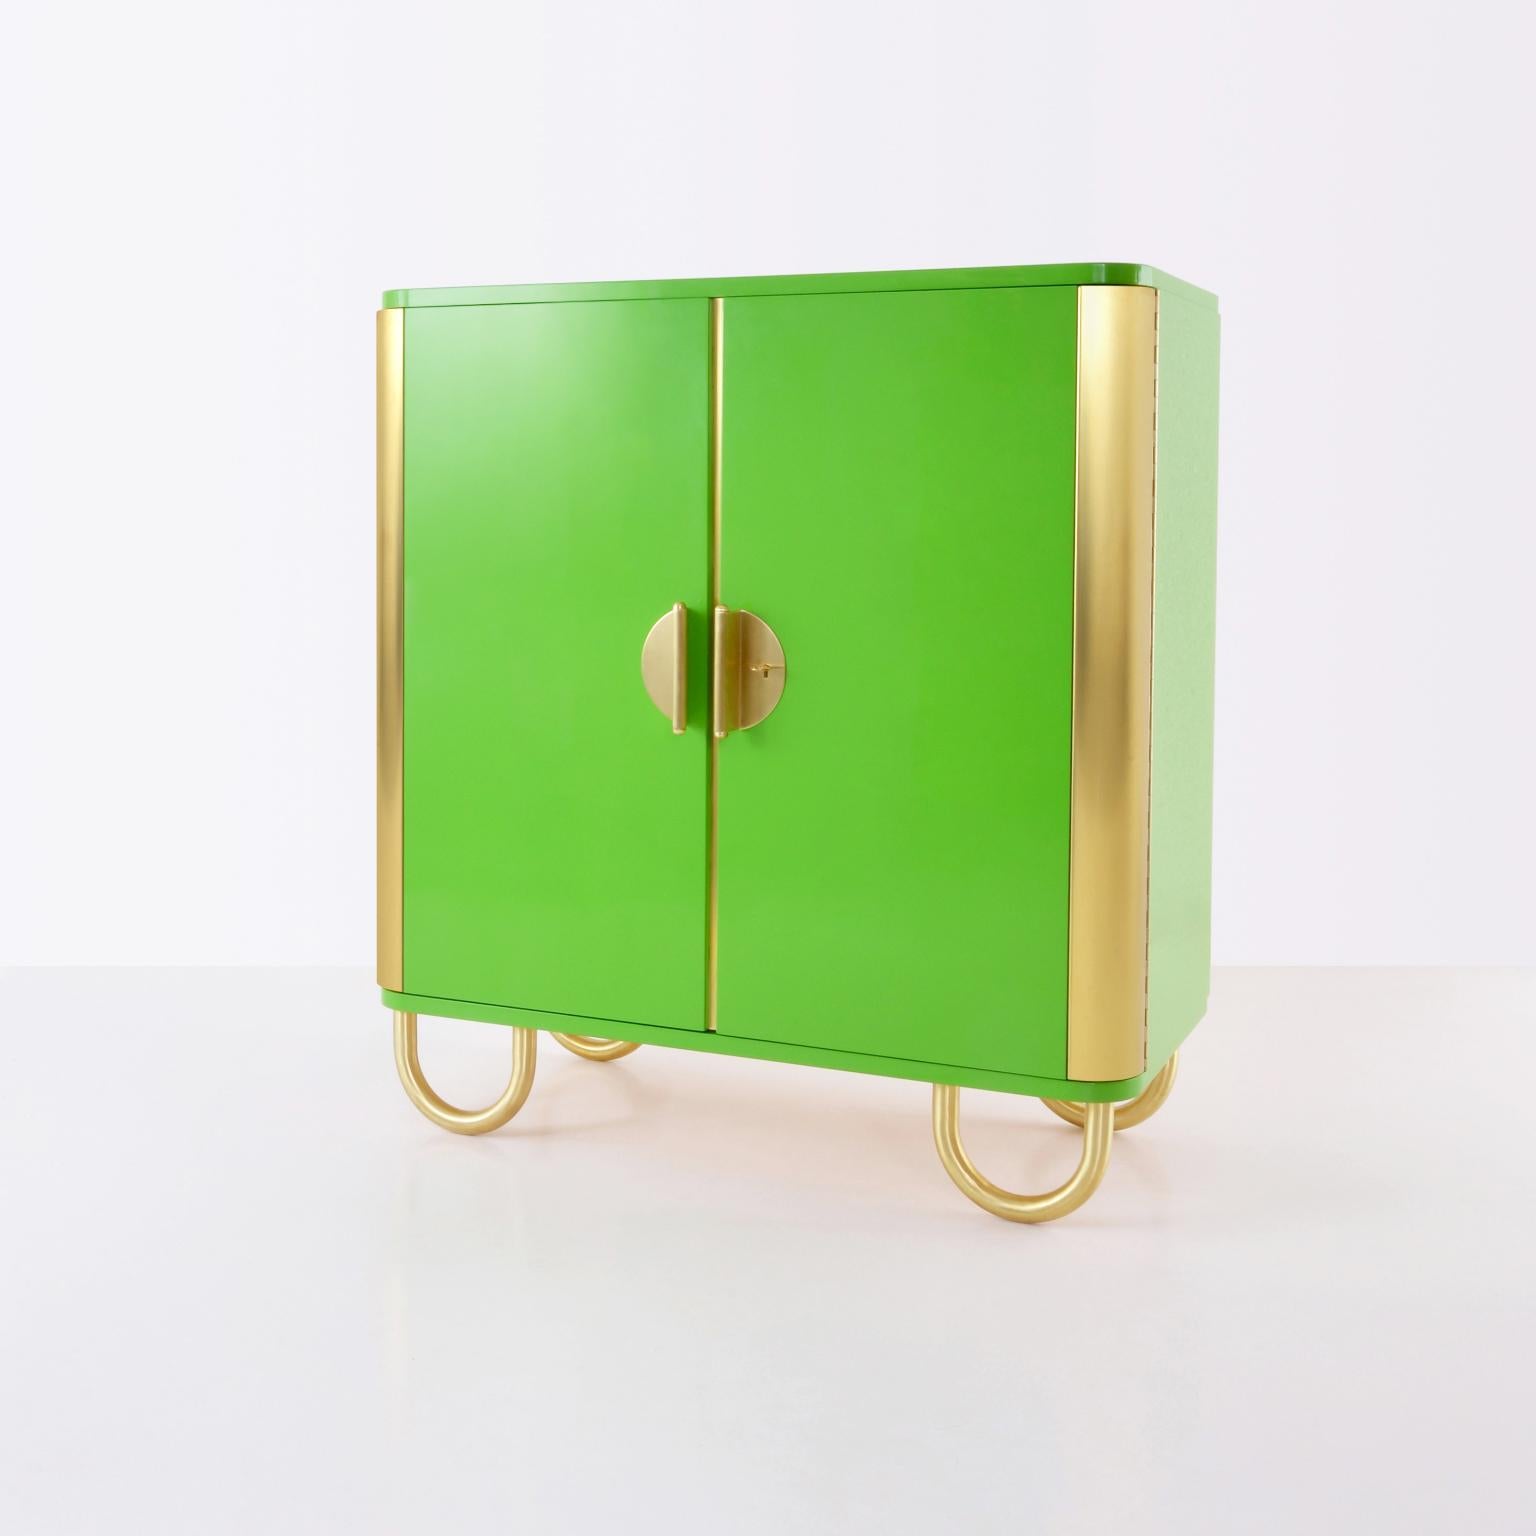 Zweitüriges Sideboard nach Maß, entworfen und hergestellt von GMD Berlin, exklusiv präsentiert in unserer Rudolf Vichr Collection'S.

Diese hochwertigen, handgefertigten Möbel in klassischem, zeitlosem Design werden nach traditionellen